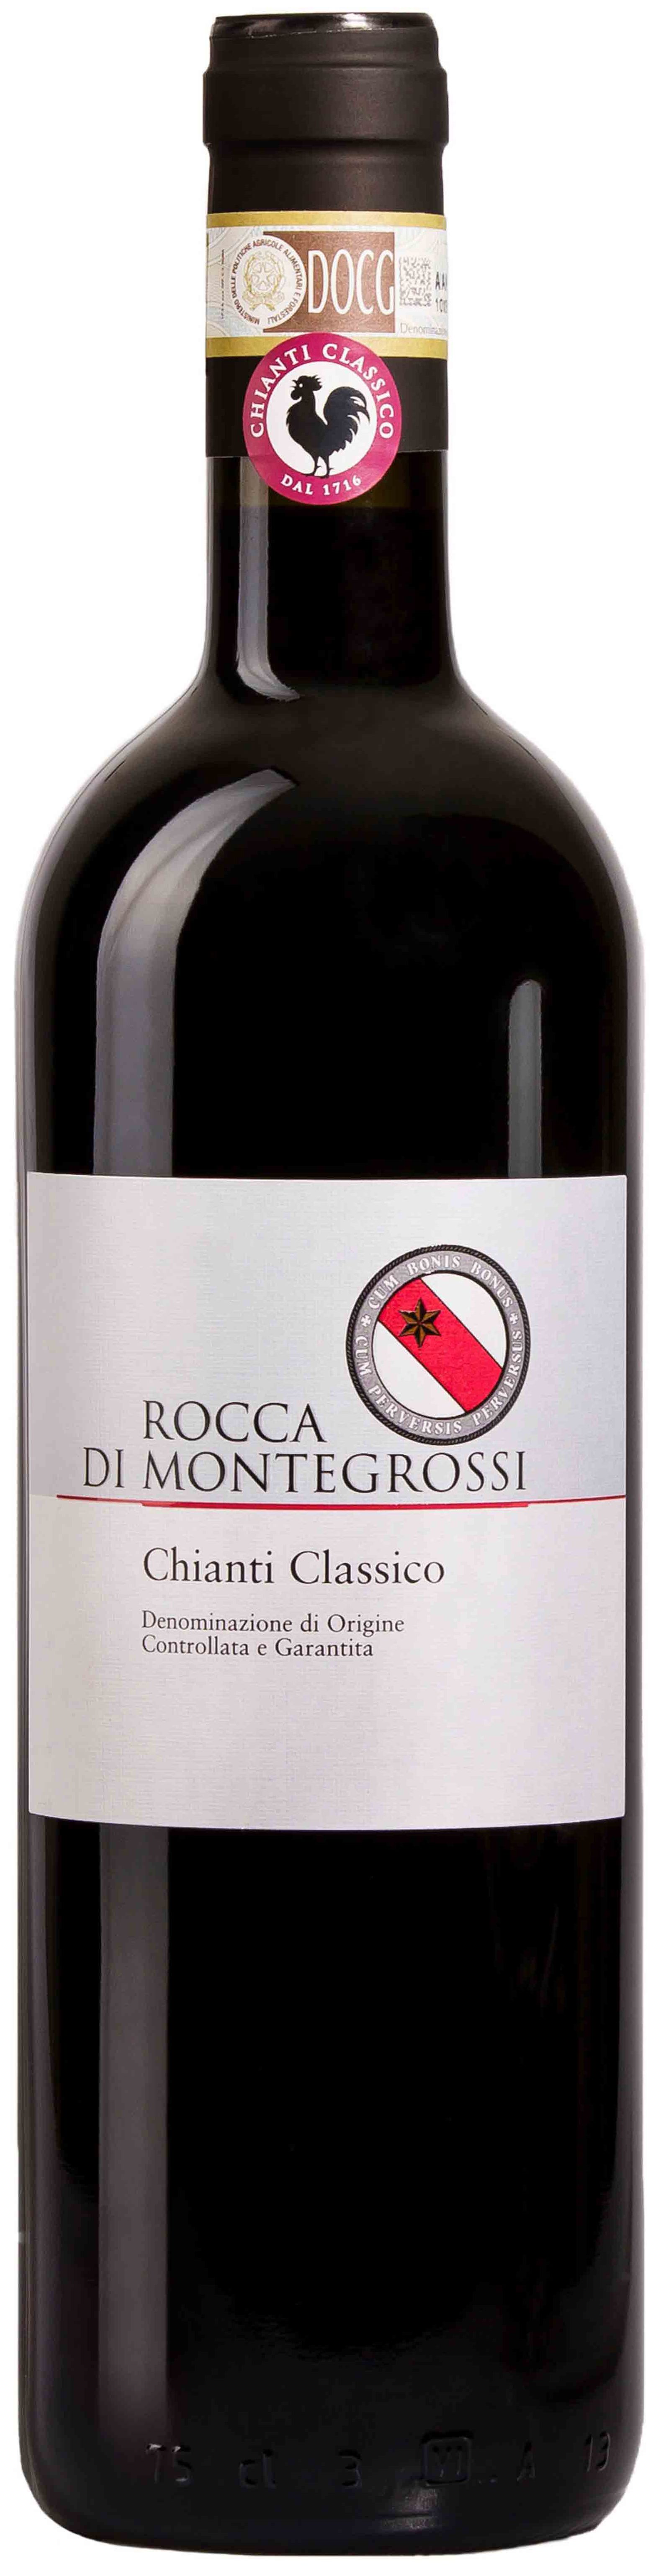 Rocca Di Montegrossi, Chianti Classico, 2013